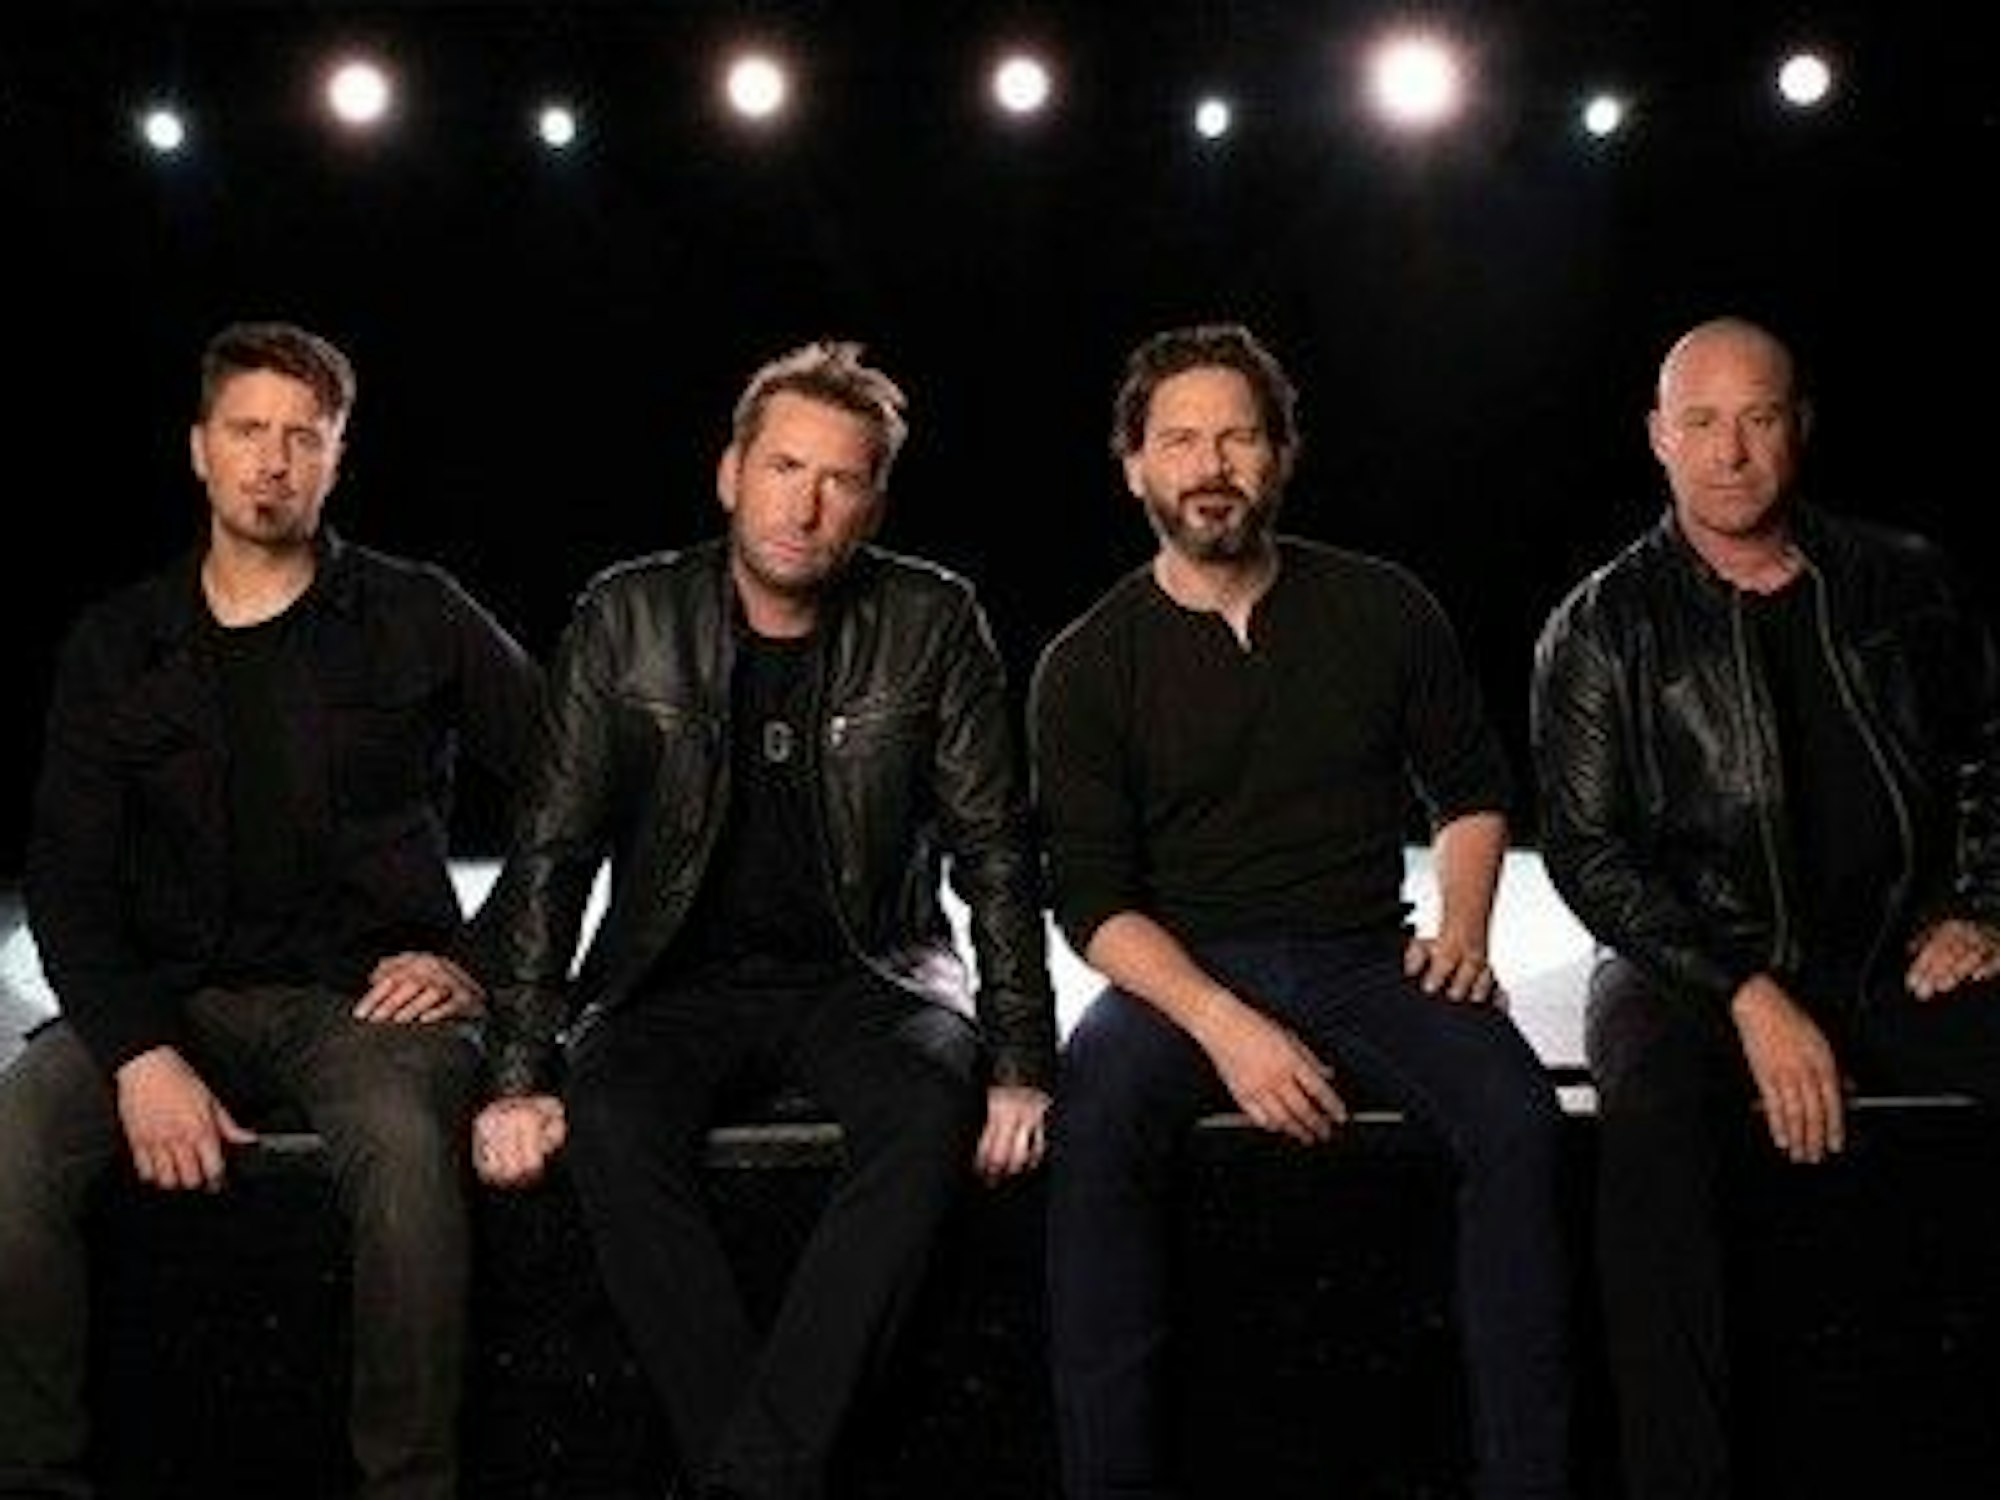 Die Band Nickelback sitzt in schwarzen Klamotten vor der Kamera.